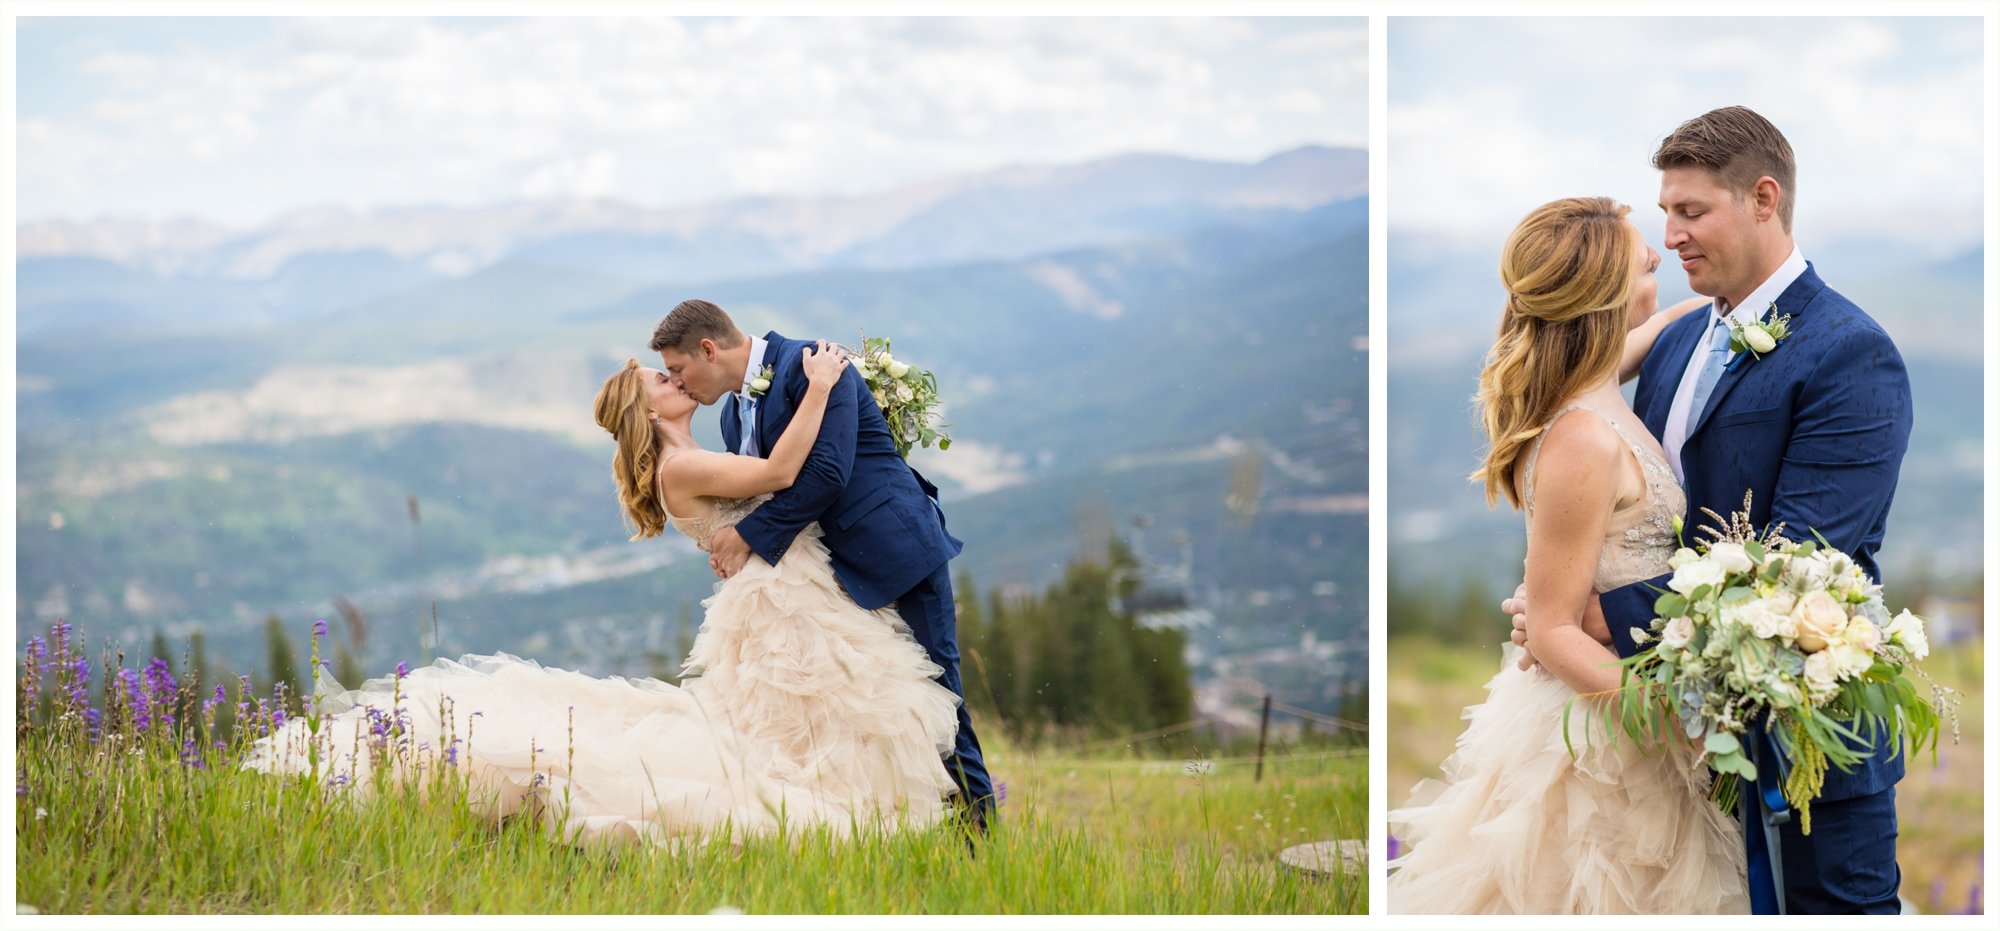 bride and groom wedding portraits for breckenridge colorado wedding romantic dip kiss